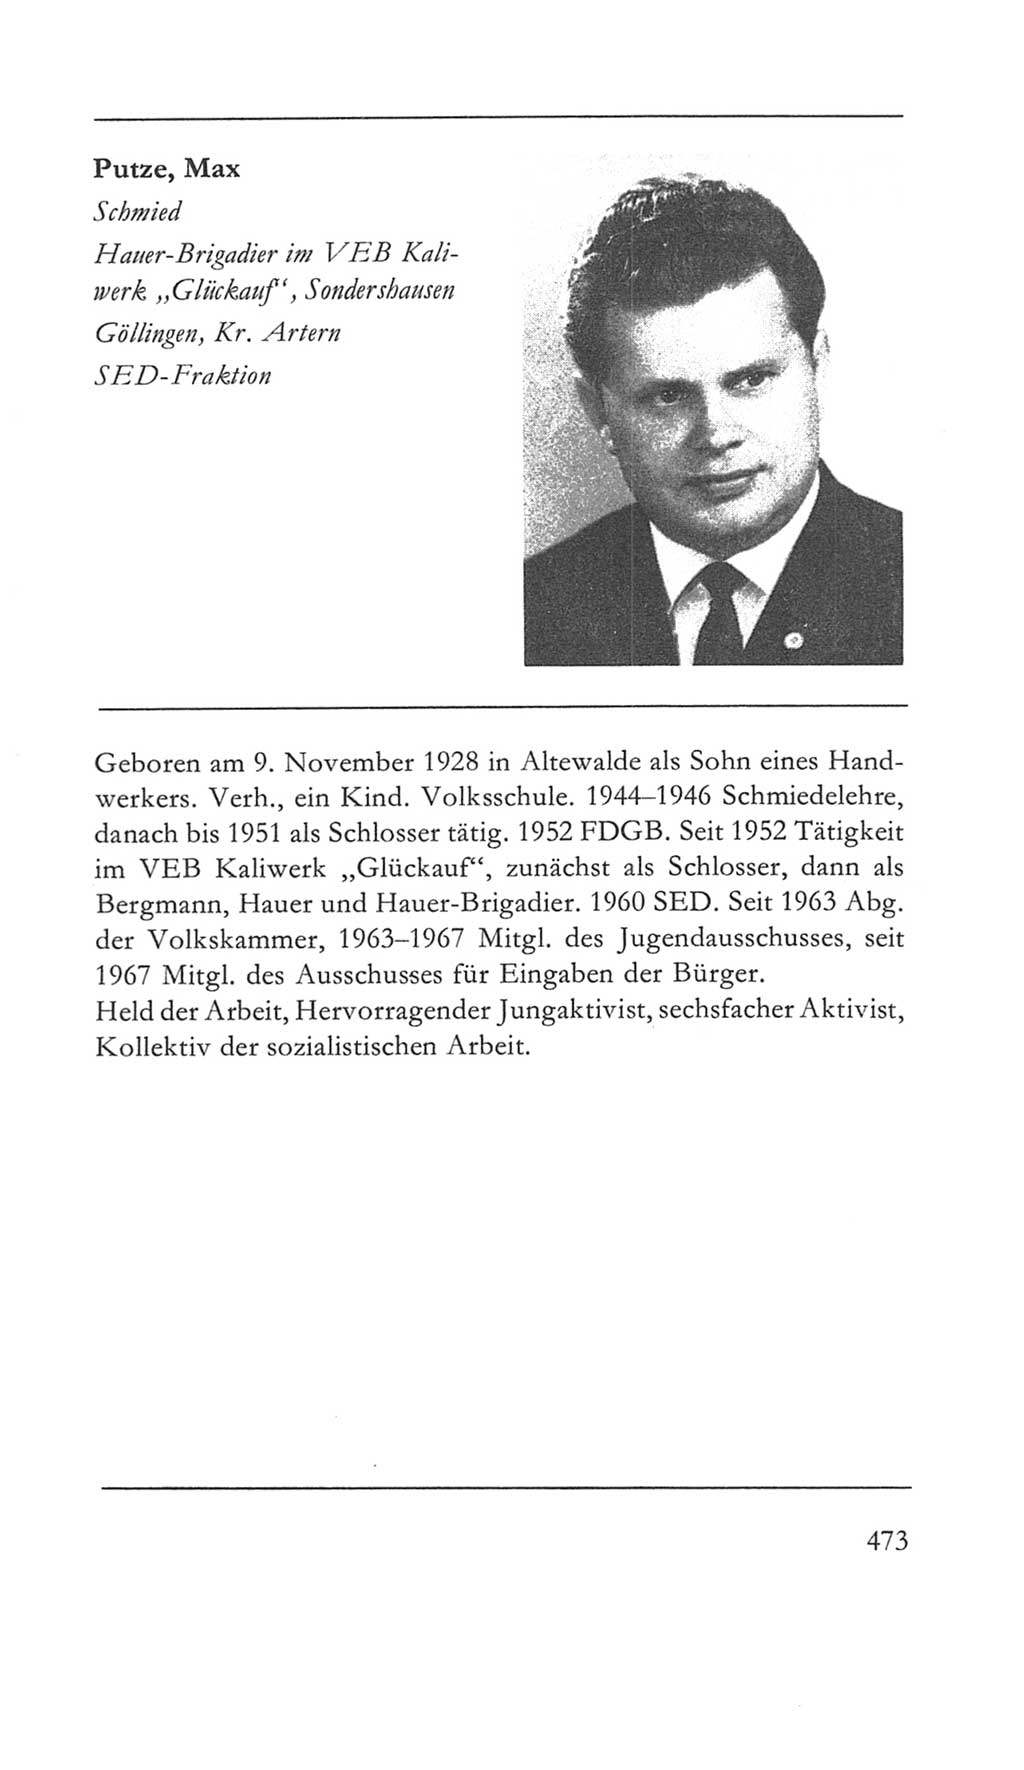 Volkskammer (VK) der Deutschen Demokratischen Republik (DDR) 5. Wahlperiode 1967-1971, Seite 473 (VK. DDR 5. WP. 1967-1971, S. 473)